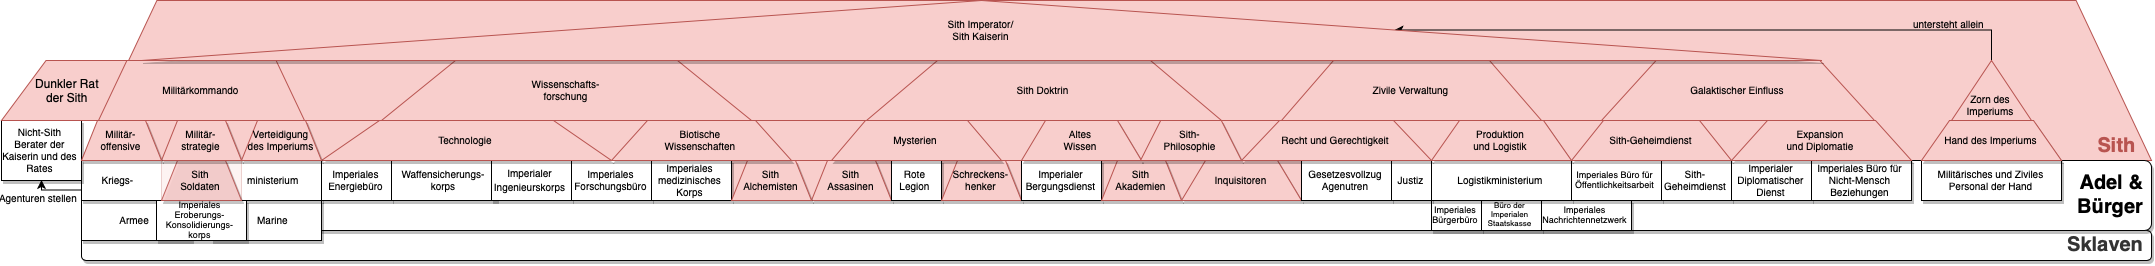 Politisches System des Sith Imperiums - Organigramm